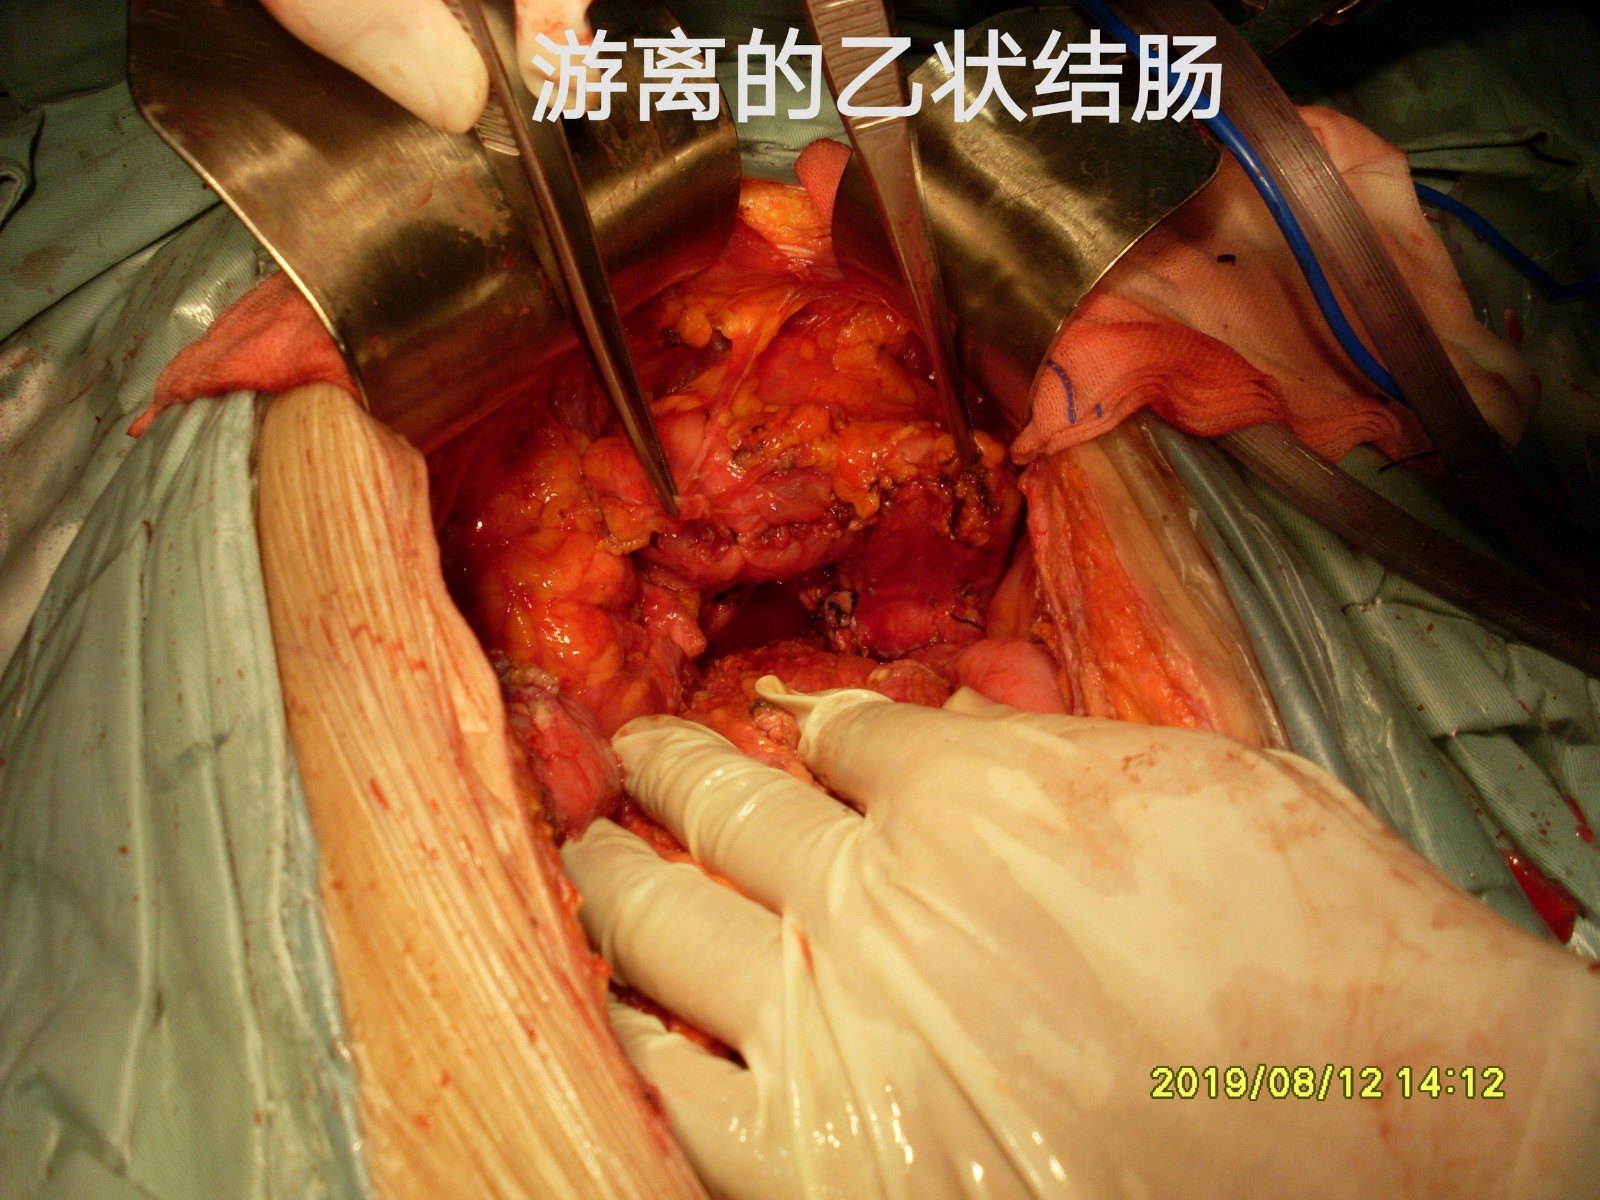 7 手术过程:无腹水,小肠管与右侧腹壁粘连,原右侧切口长约5cm,裂开至